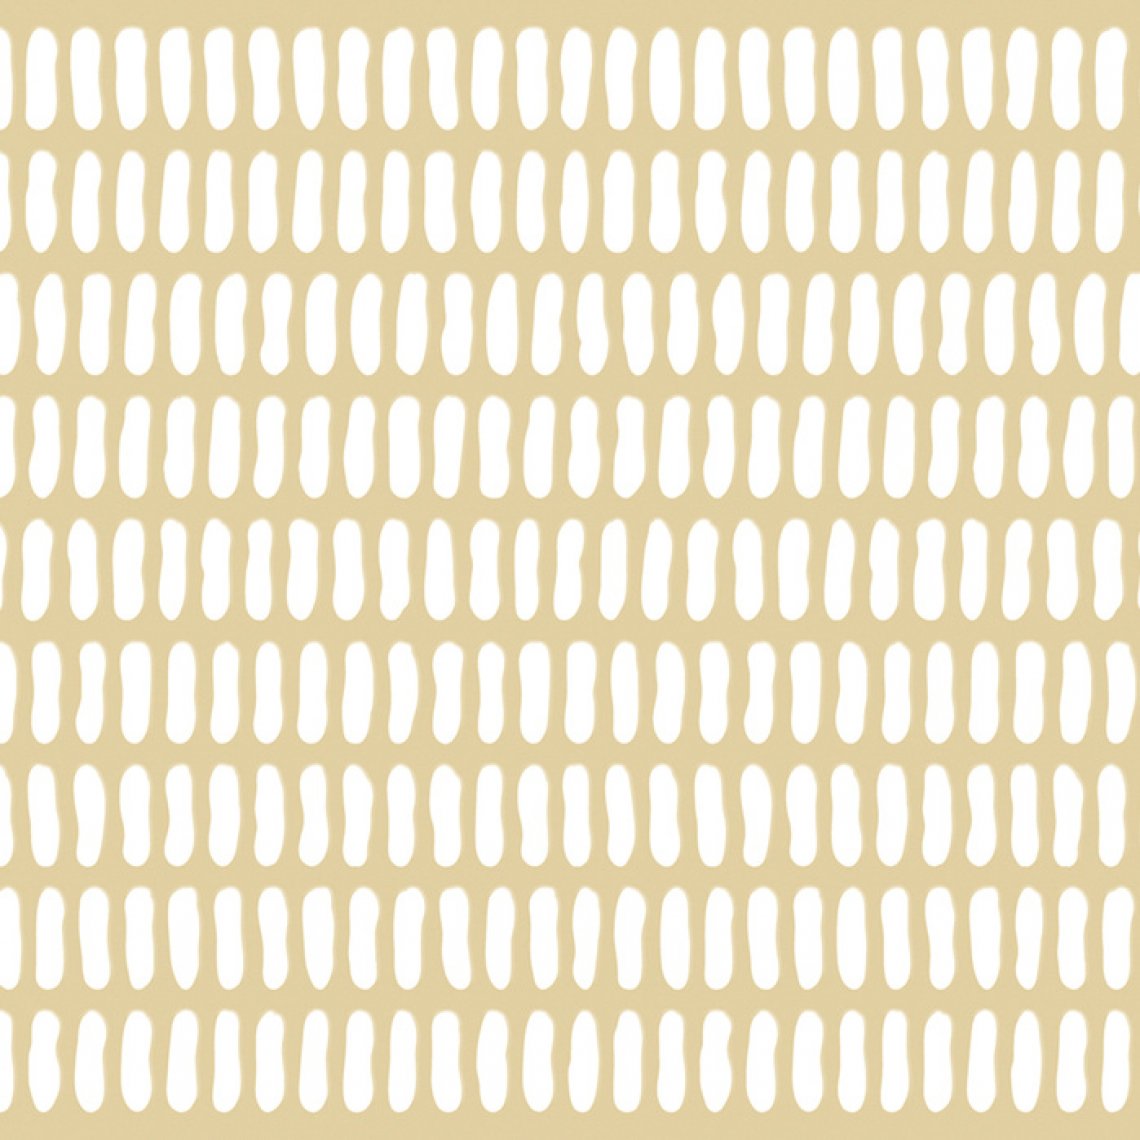 sciana-kerradeco-knits-beige2020_w700-h735-q95.jpg